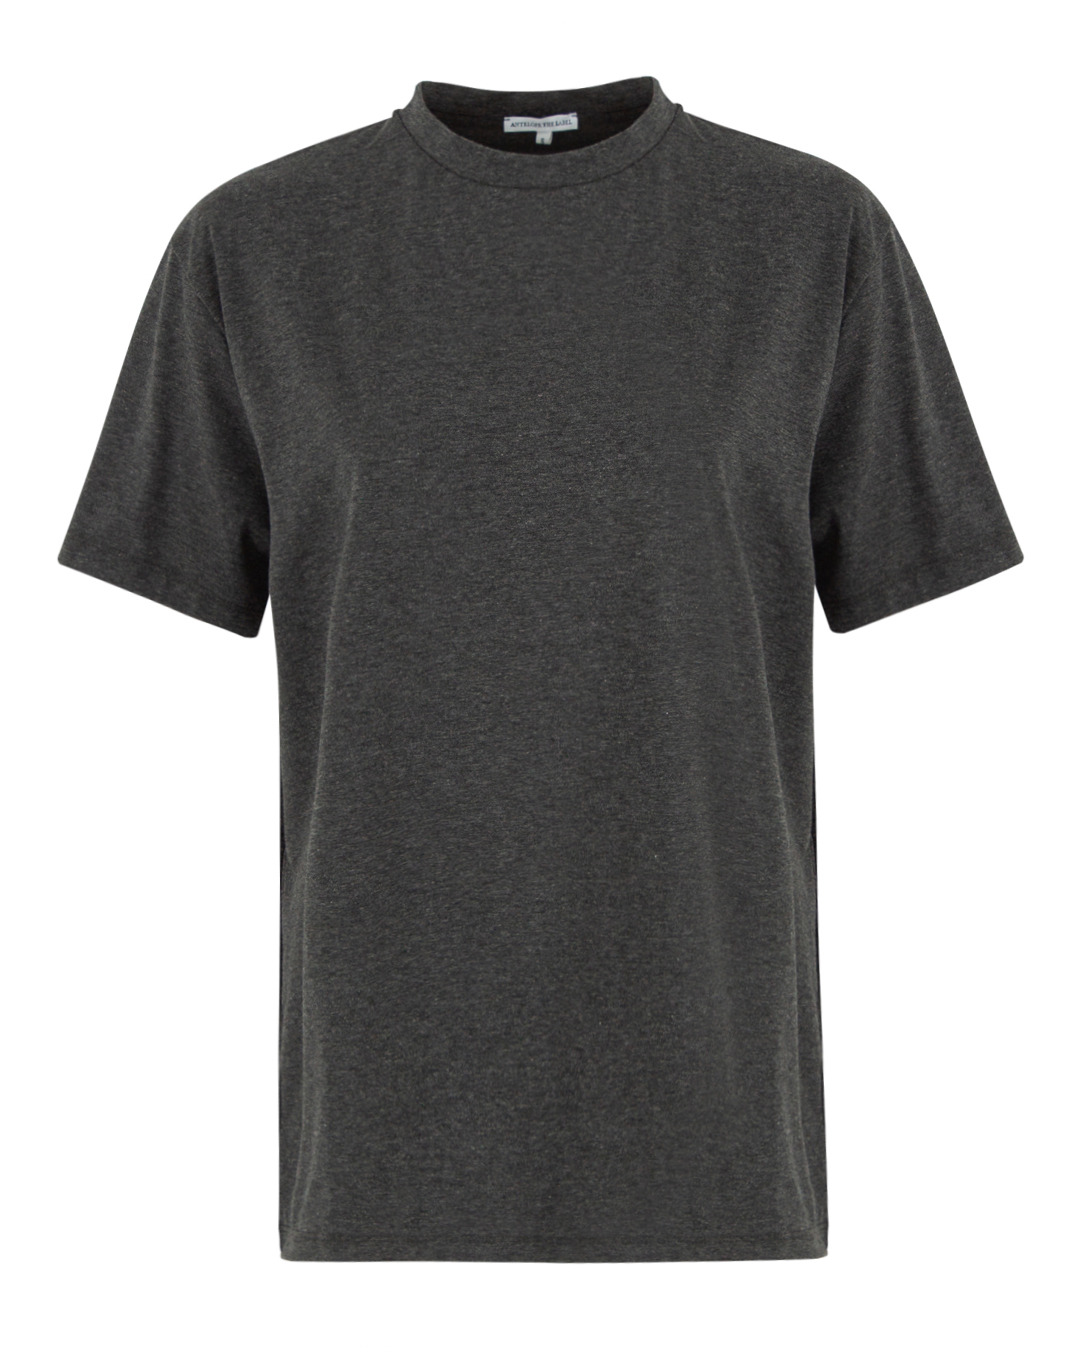 хлопковая футболка ANTELOPE THE LABEL T1.ANTRACITE тем.серый s, размер s